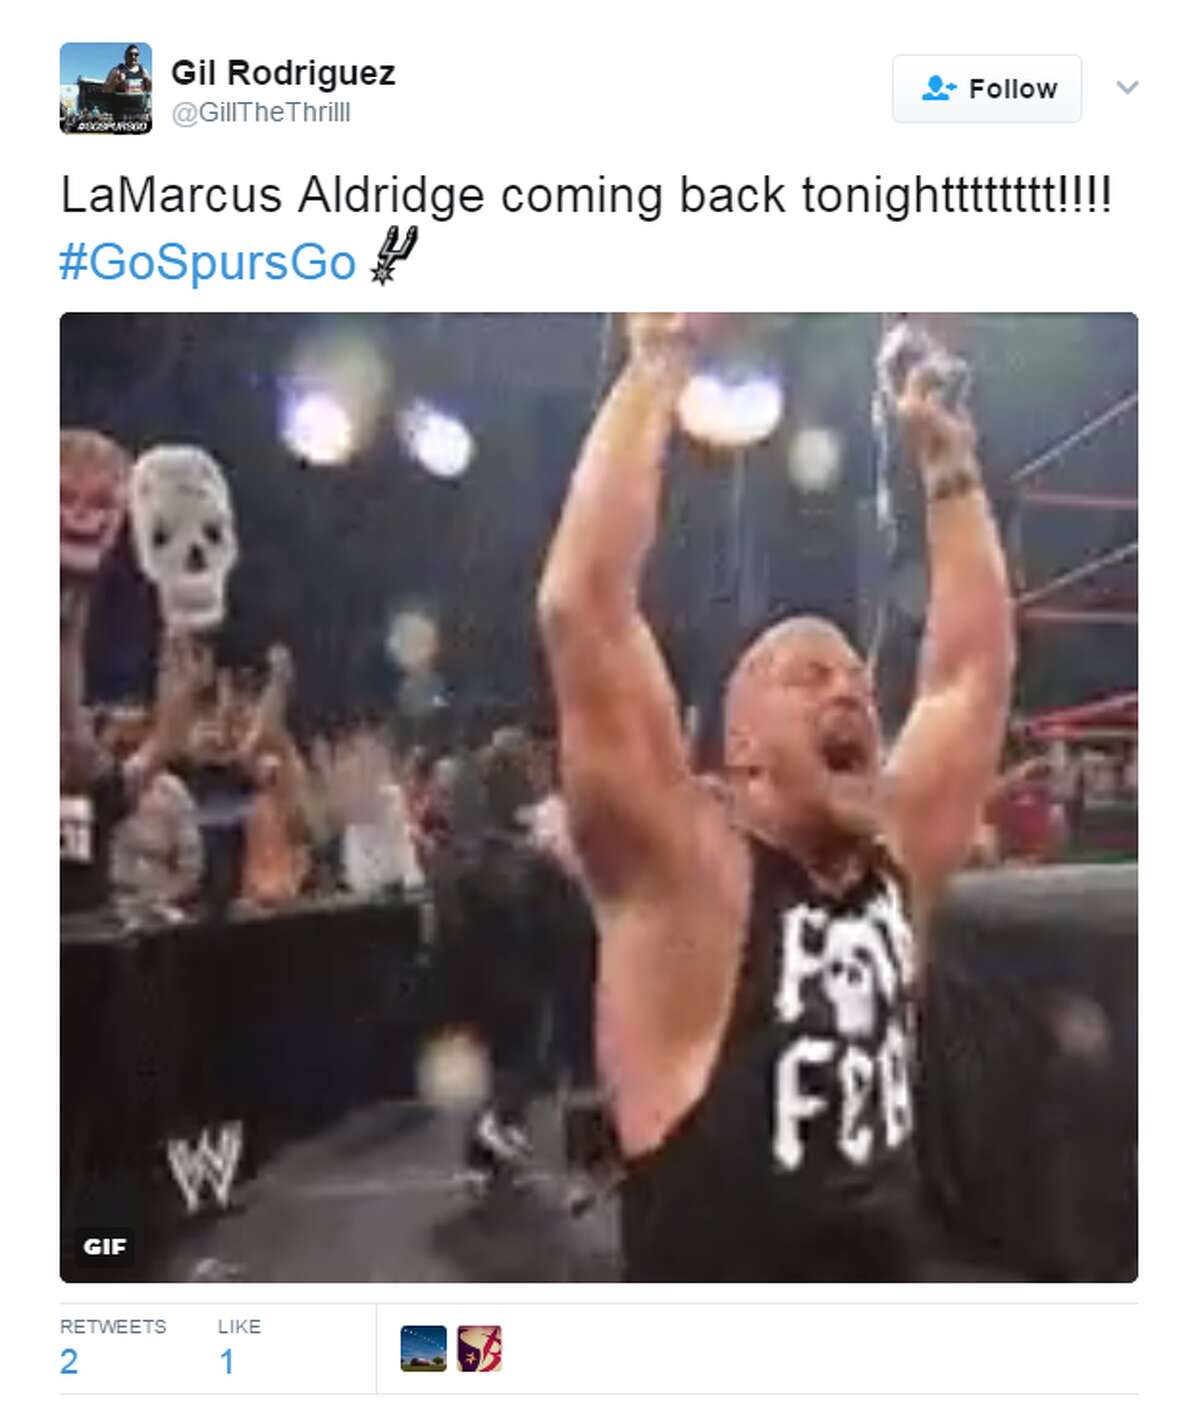 Social media reacts to LaMarcus Aldridge's return.